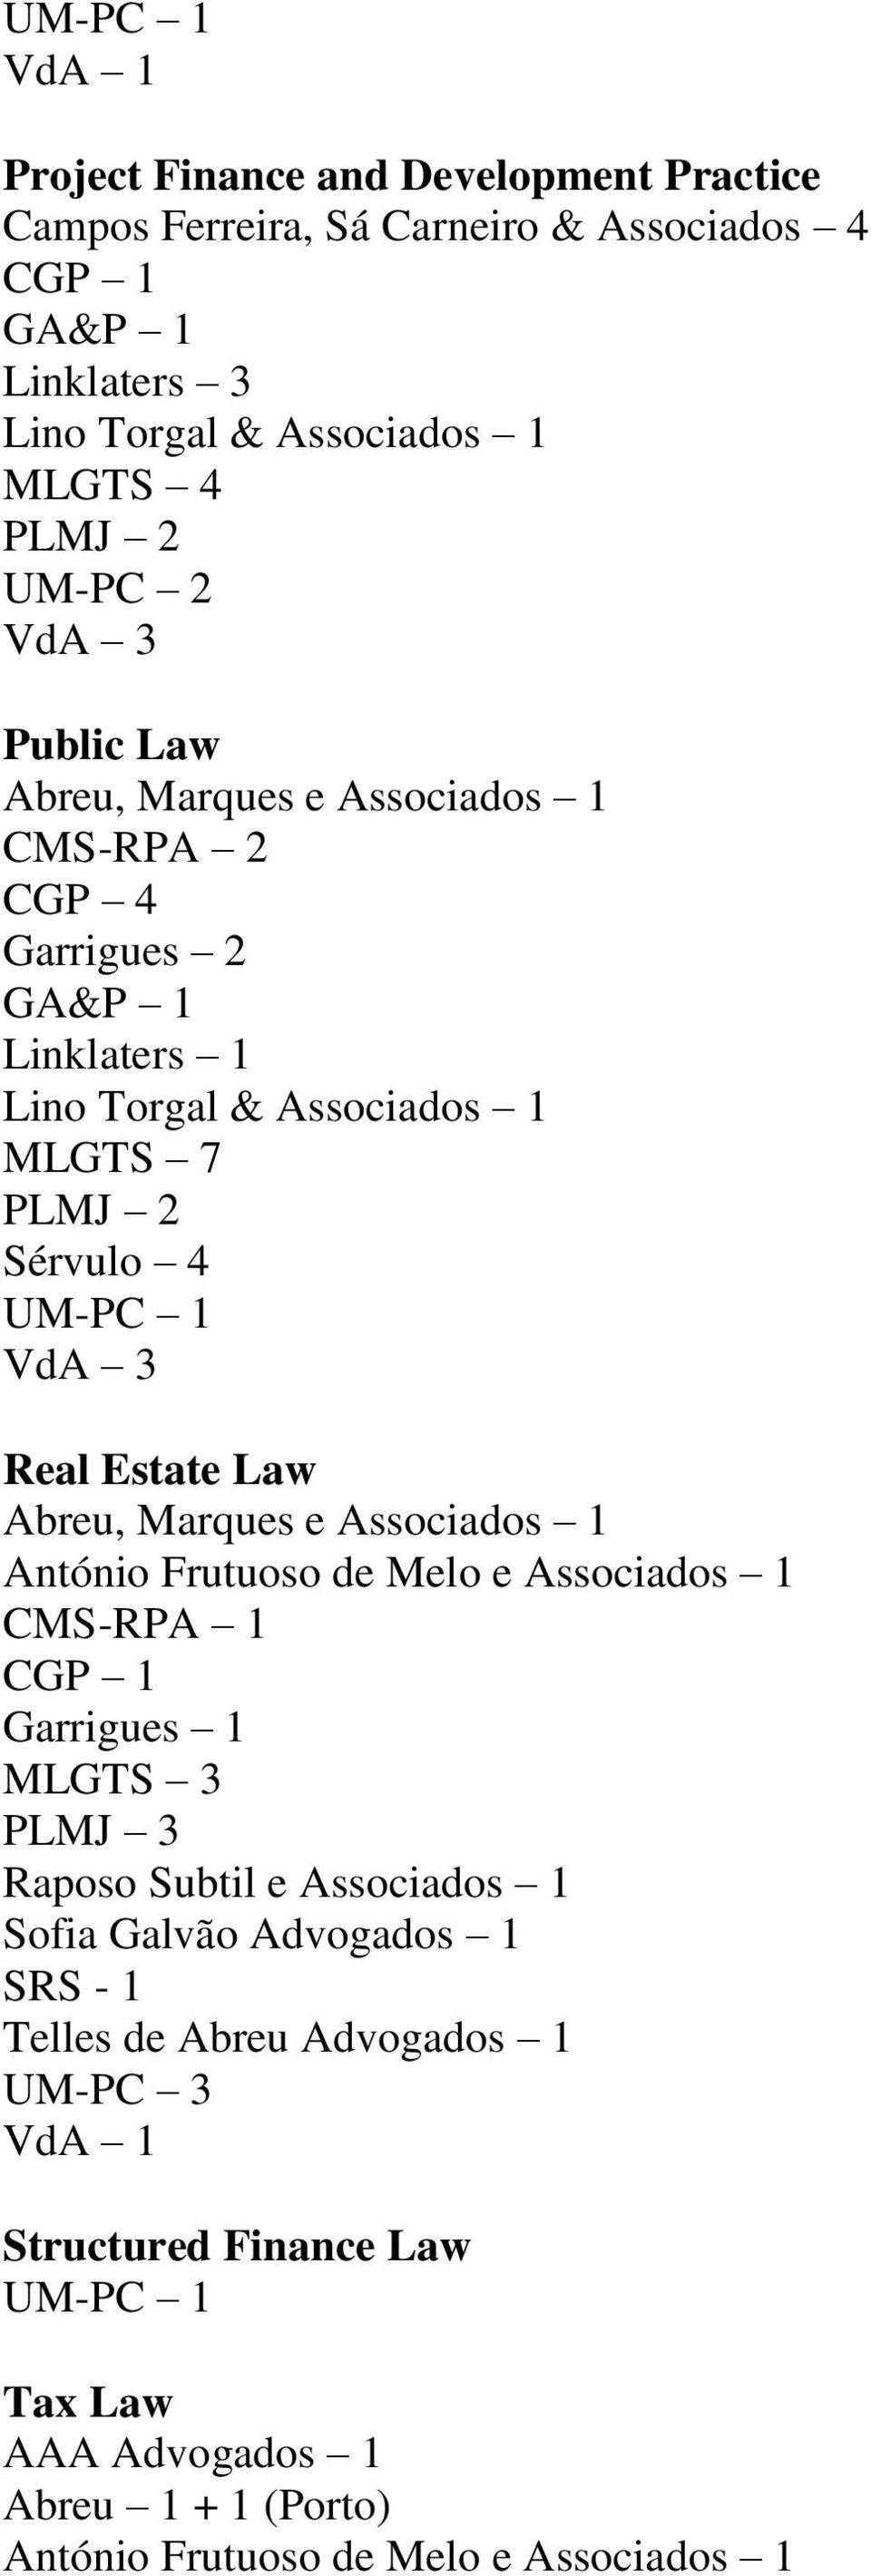 UM-PC 1 Real Estate Law Abreu, Marques e Associados 1 CMS-RPA 1 MLGTS 3 PLMJ 3 Raposo Subtil e Associados 1 Sofia